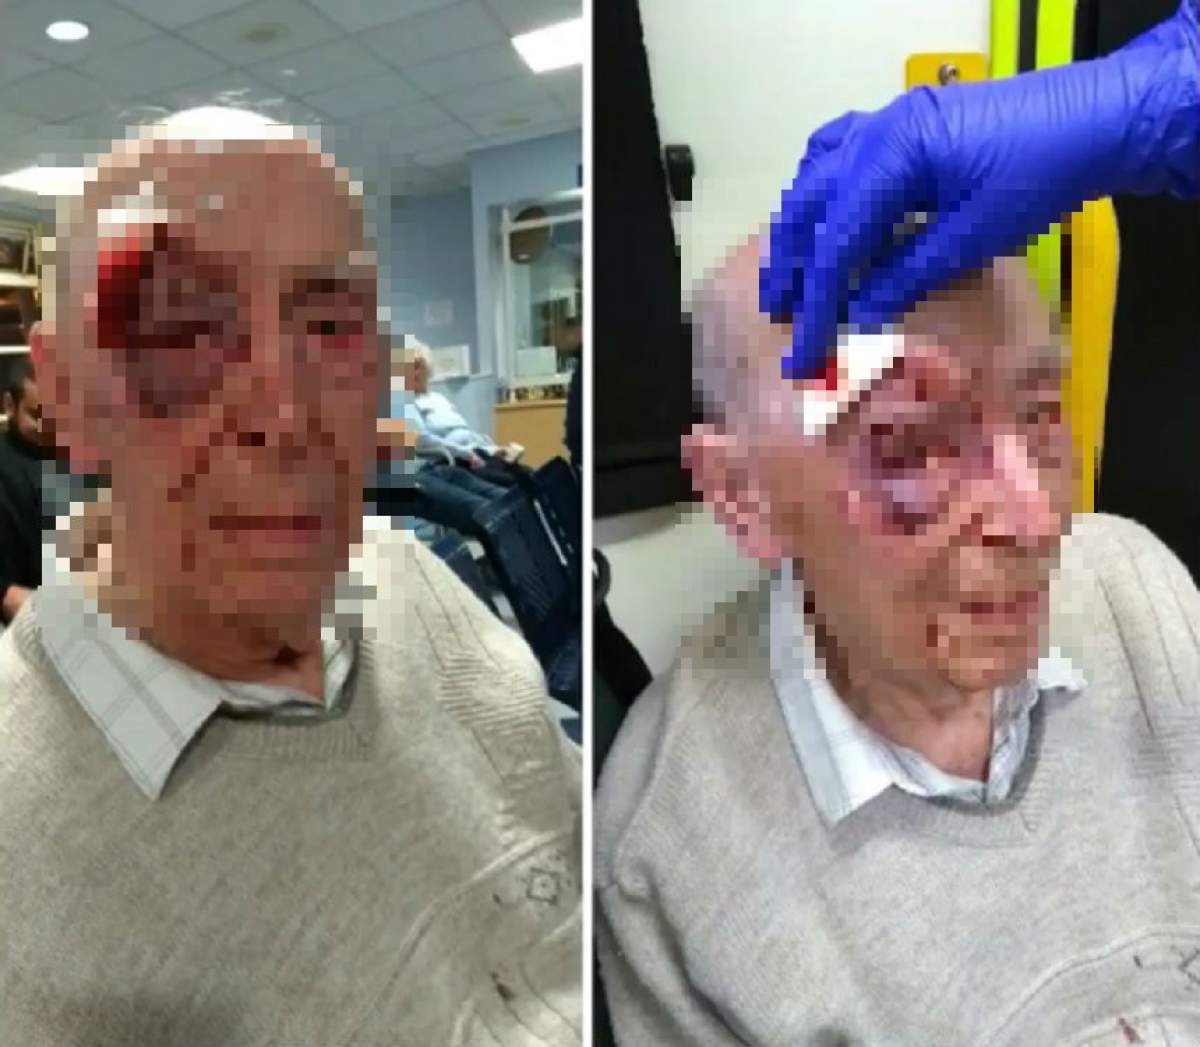 FOTO & VIDEO / Şocant! Momentele terifiante prin care a trecut un bătrân de 91 de ani. "Nu m-am putut opri din tremurat!"